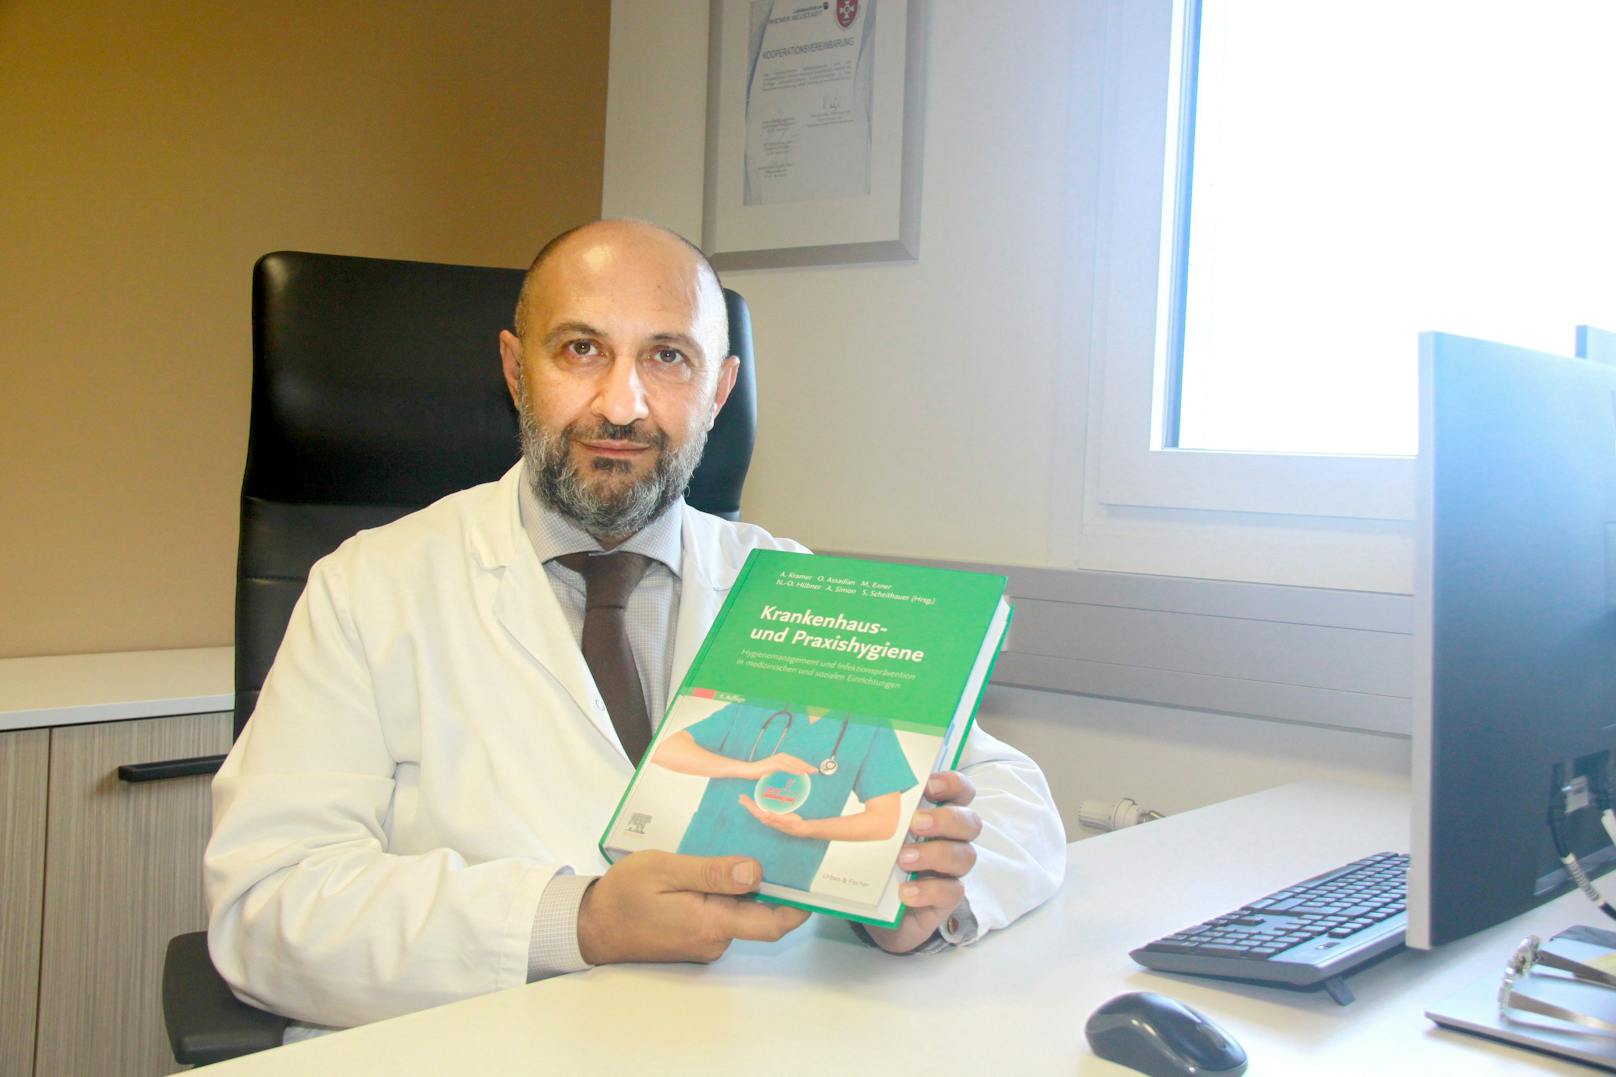 Univ.-Prof. Dr. Ojan Assadian mit seinem Buch.